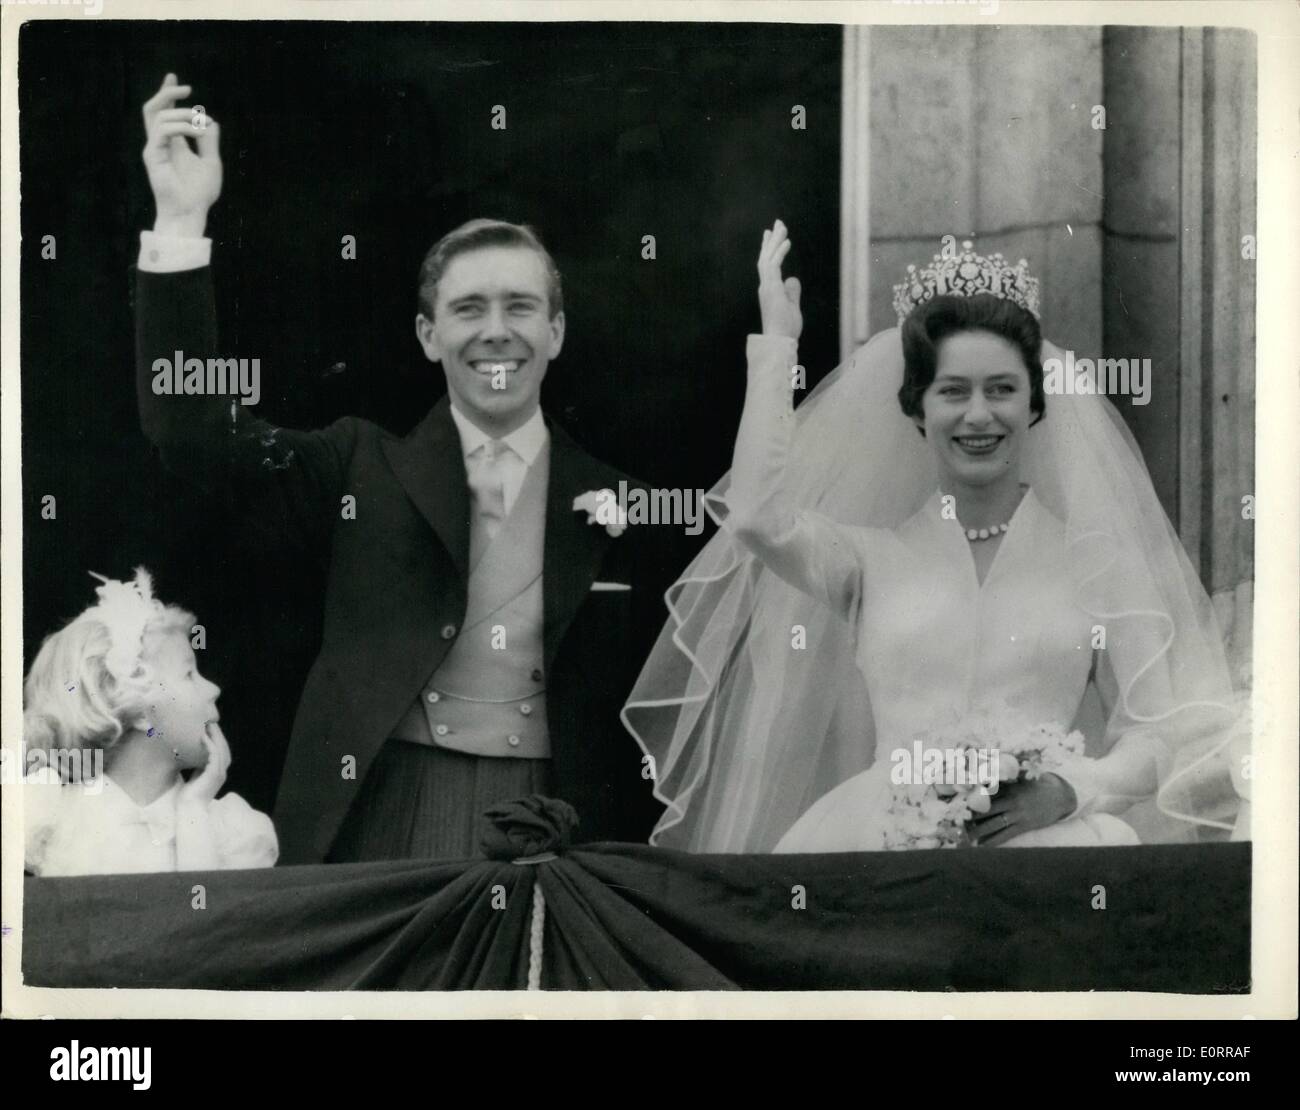 05 maggio 1960 - Il Royal Wedding.. La principessa Margaret e suo marito su Palace Balconyy. Mostra immagine: la principessa Margaret e suo marito Antony Armstrong Jones riconoscere le acclamazioni della folla quando è apparso sul balcone di Buckingham Palace - dopo il loro matrimonio a Westminster Abbey oggi. Foto Stock